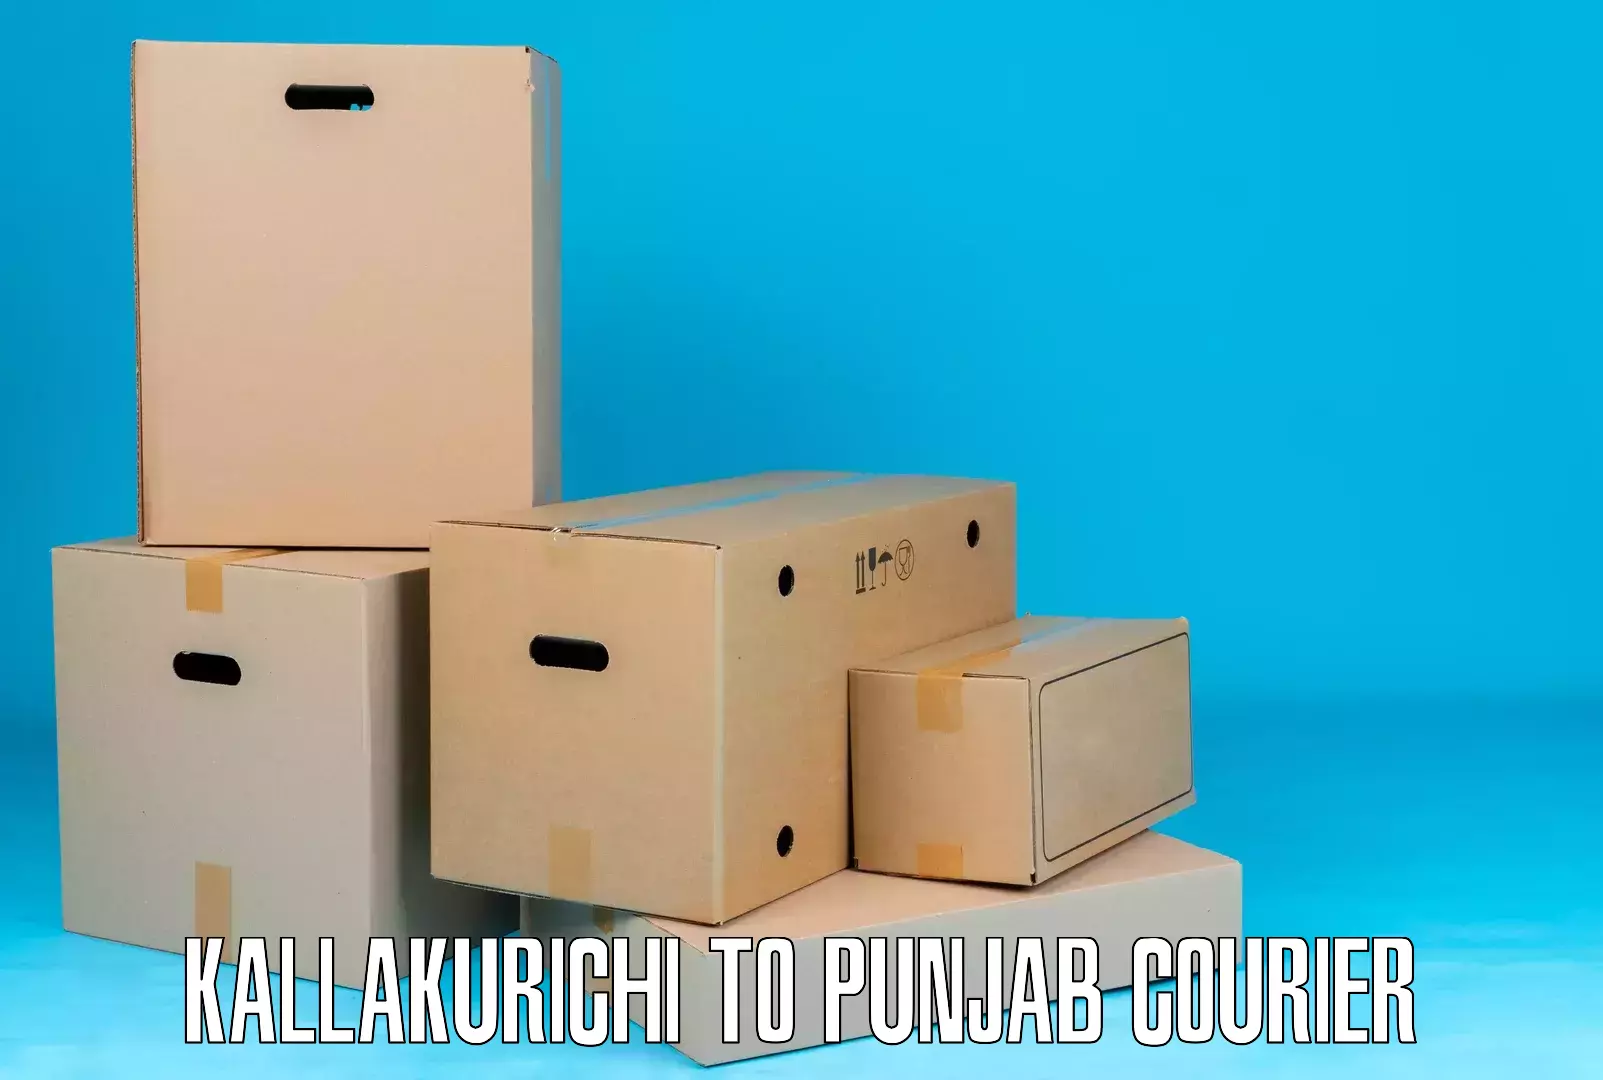 Automated shipping Kallakurichi to Punjab